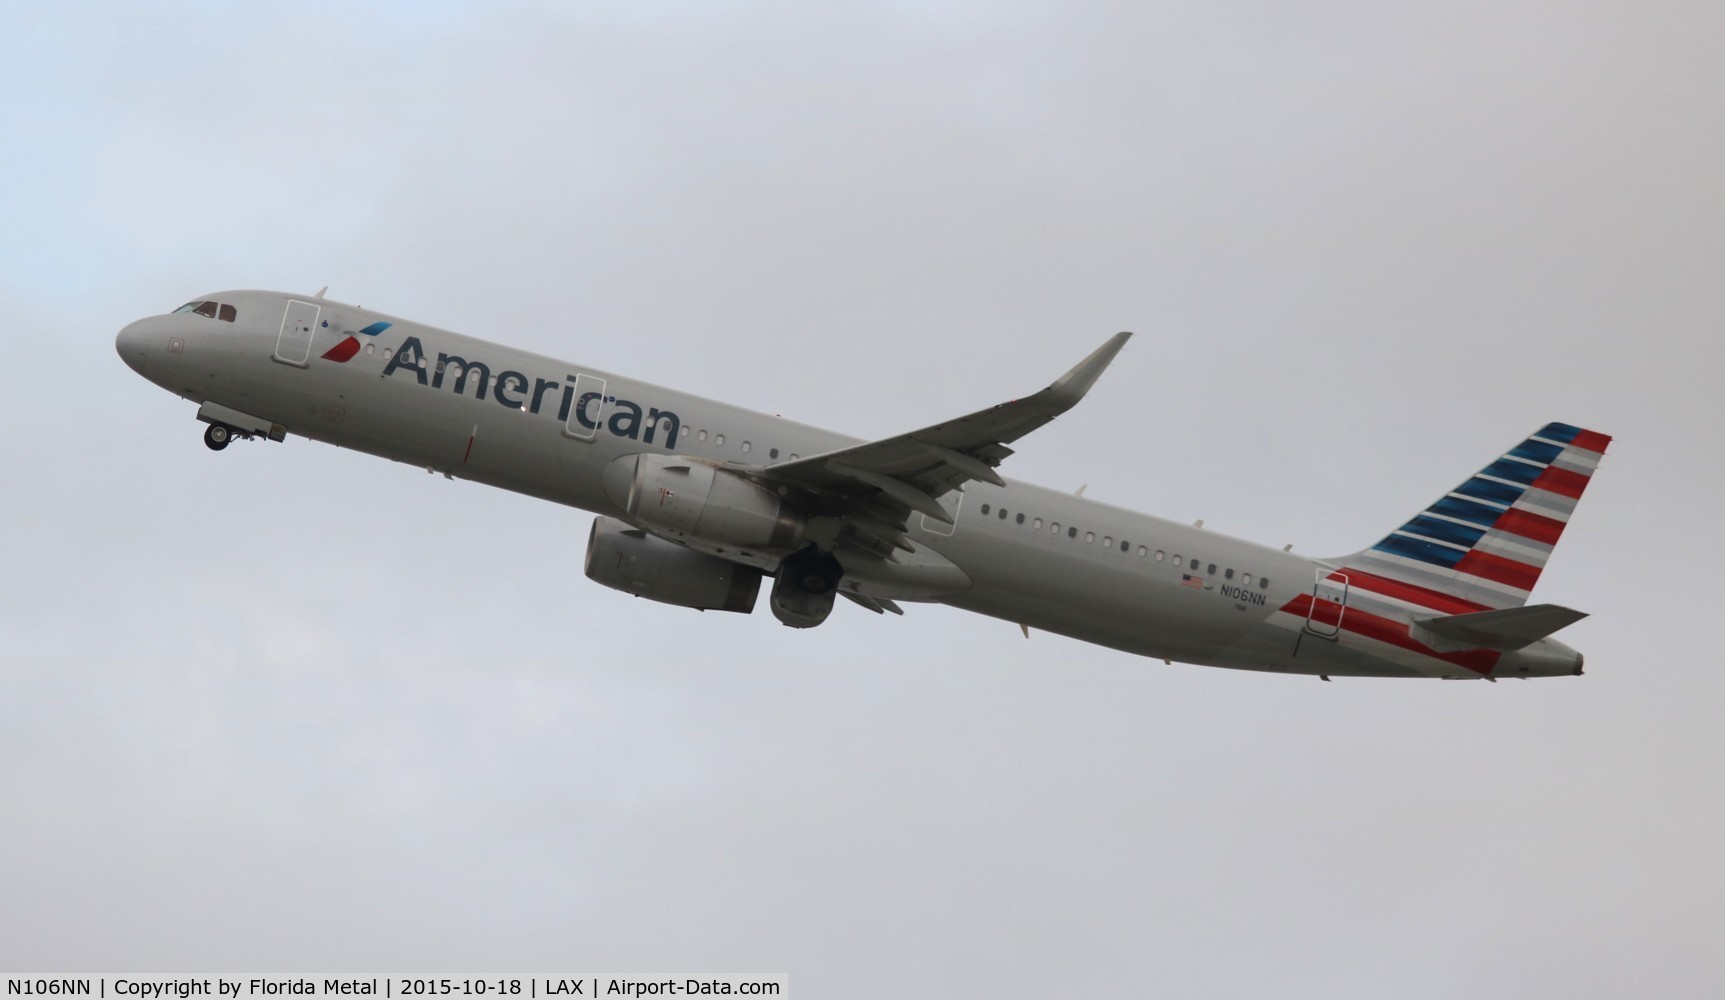 N106NN, 2013 Airbus A321-231 C/N 5932, American